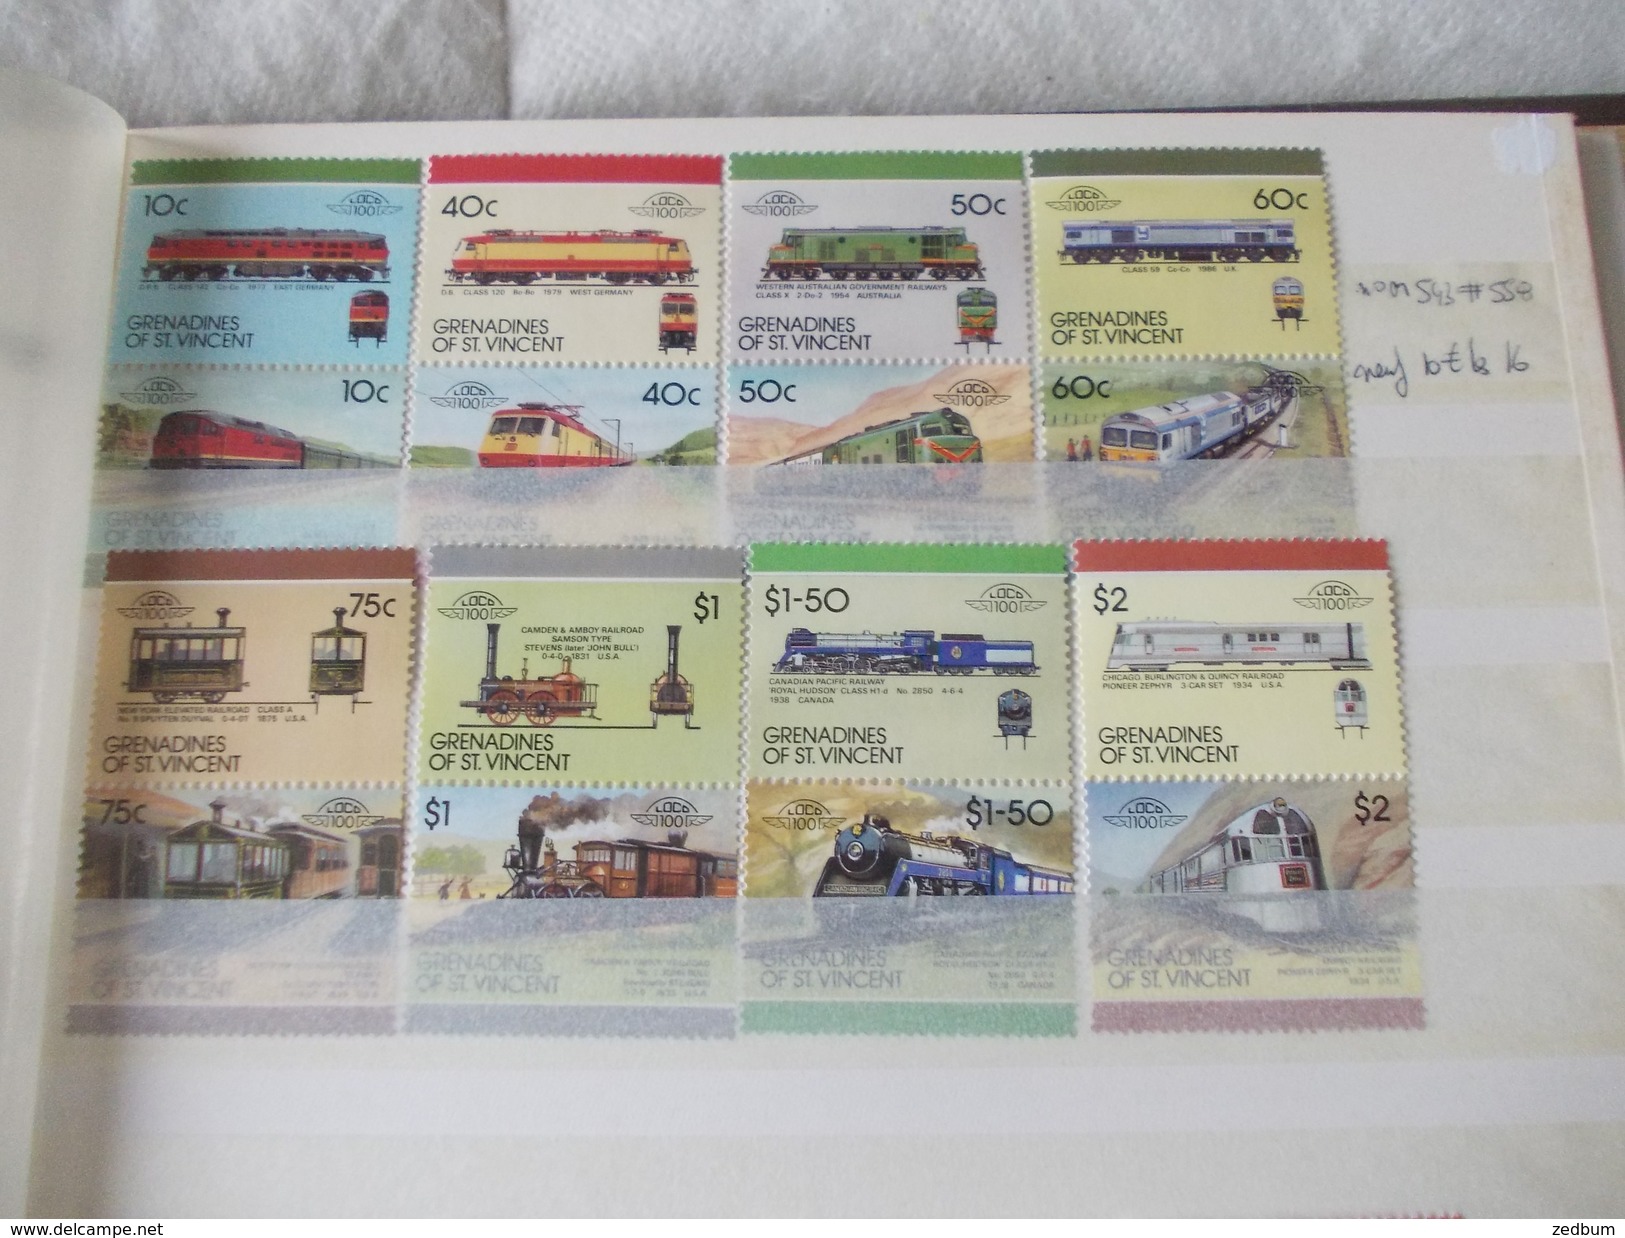 ALBUM 9 collection de timbres avec pour thème le chemin de fer train de tout pays valeur 510.20 &euro;